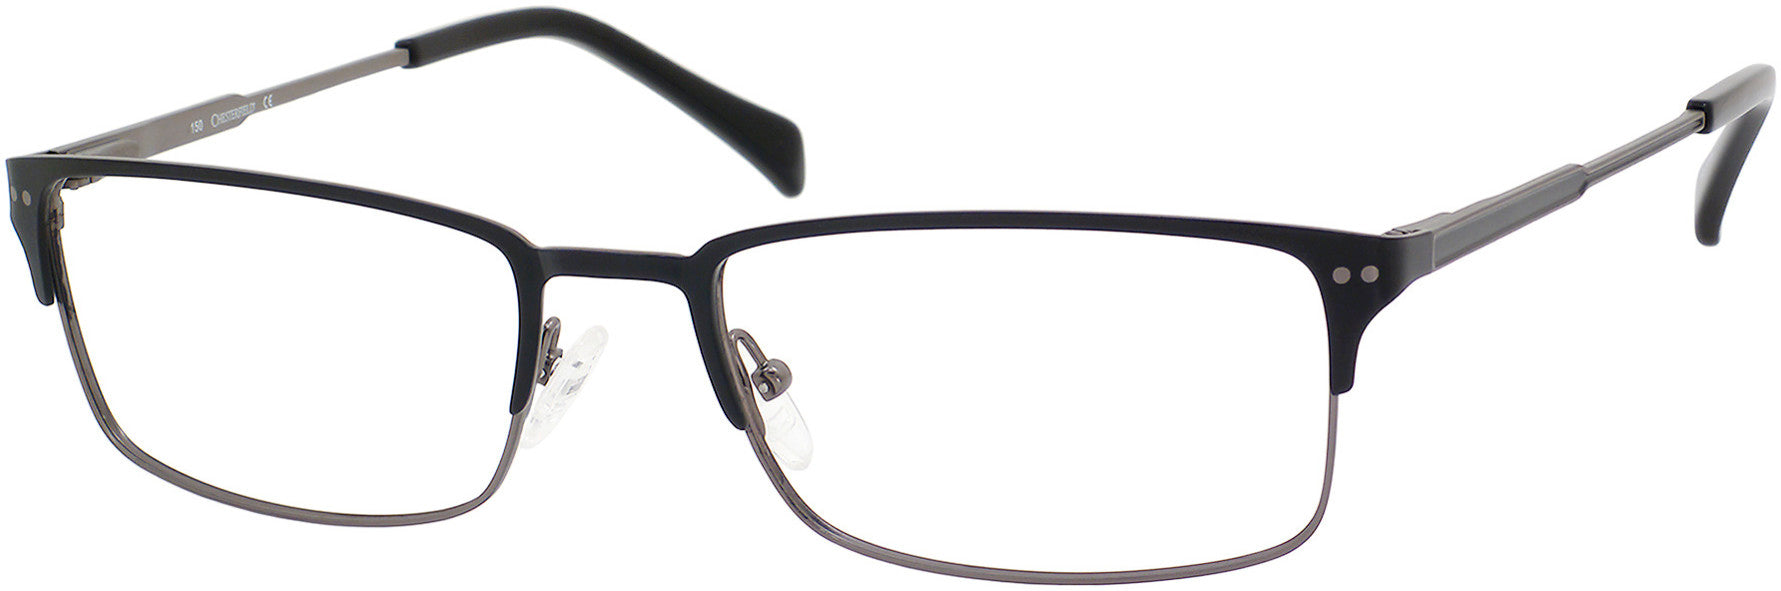  Chesterfield 17 XL Rectangular Eyeglasses 0RD2-0RD2  Black (00 Demo Lens)